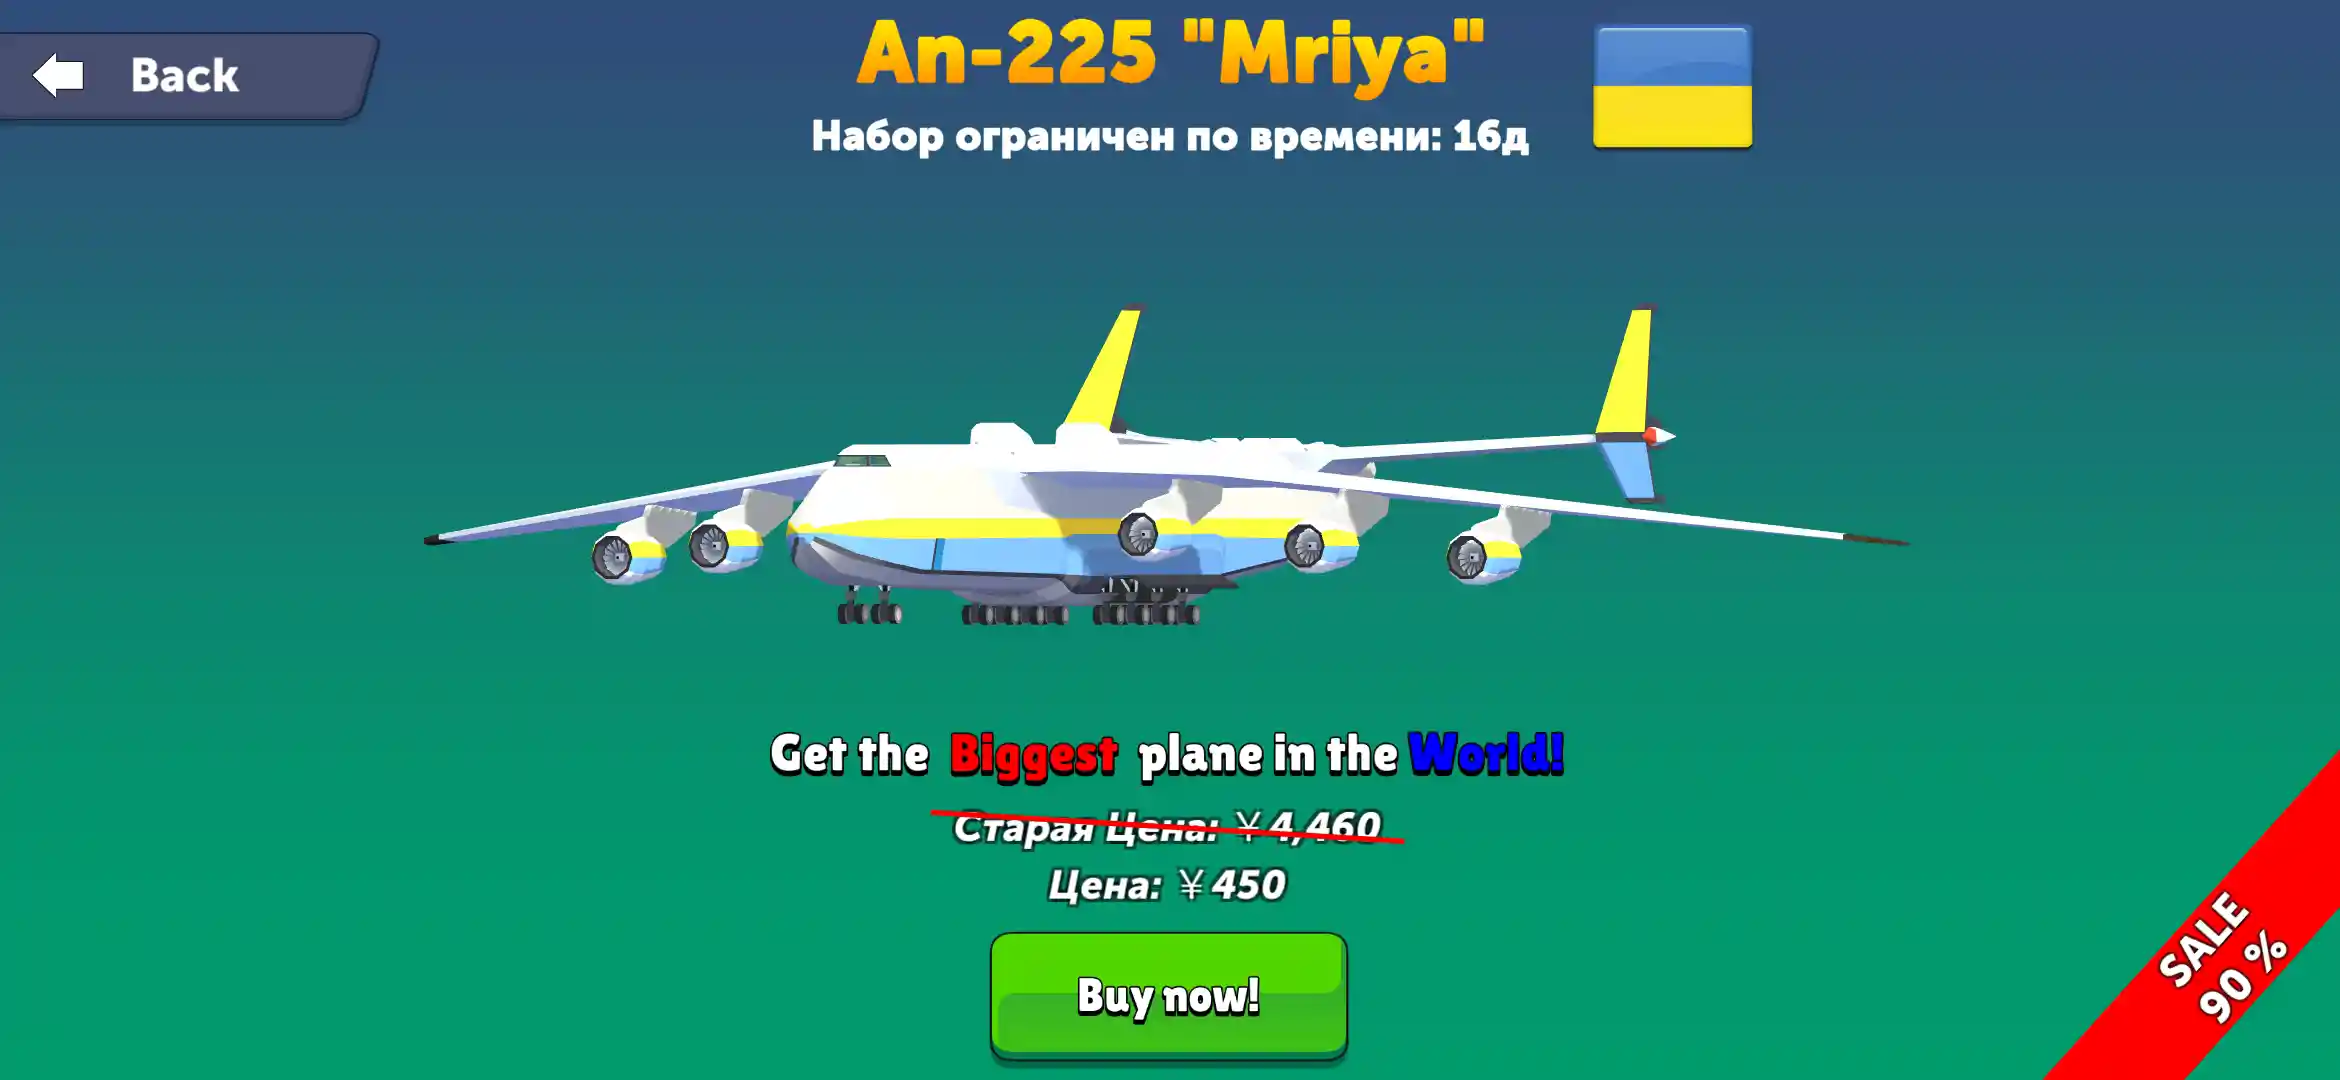 An-225 Mriya.jpg